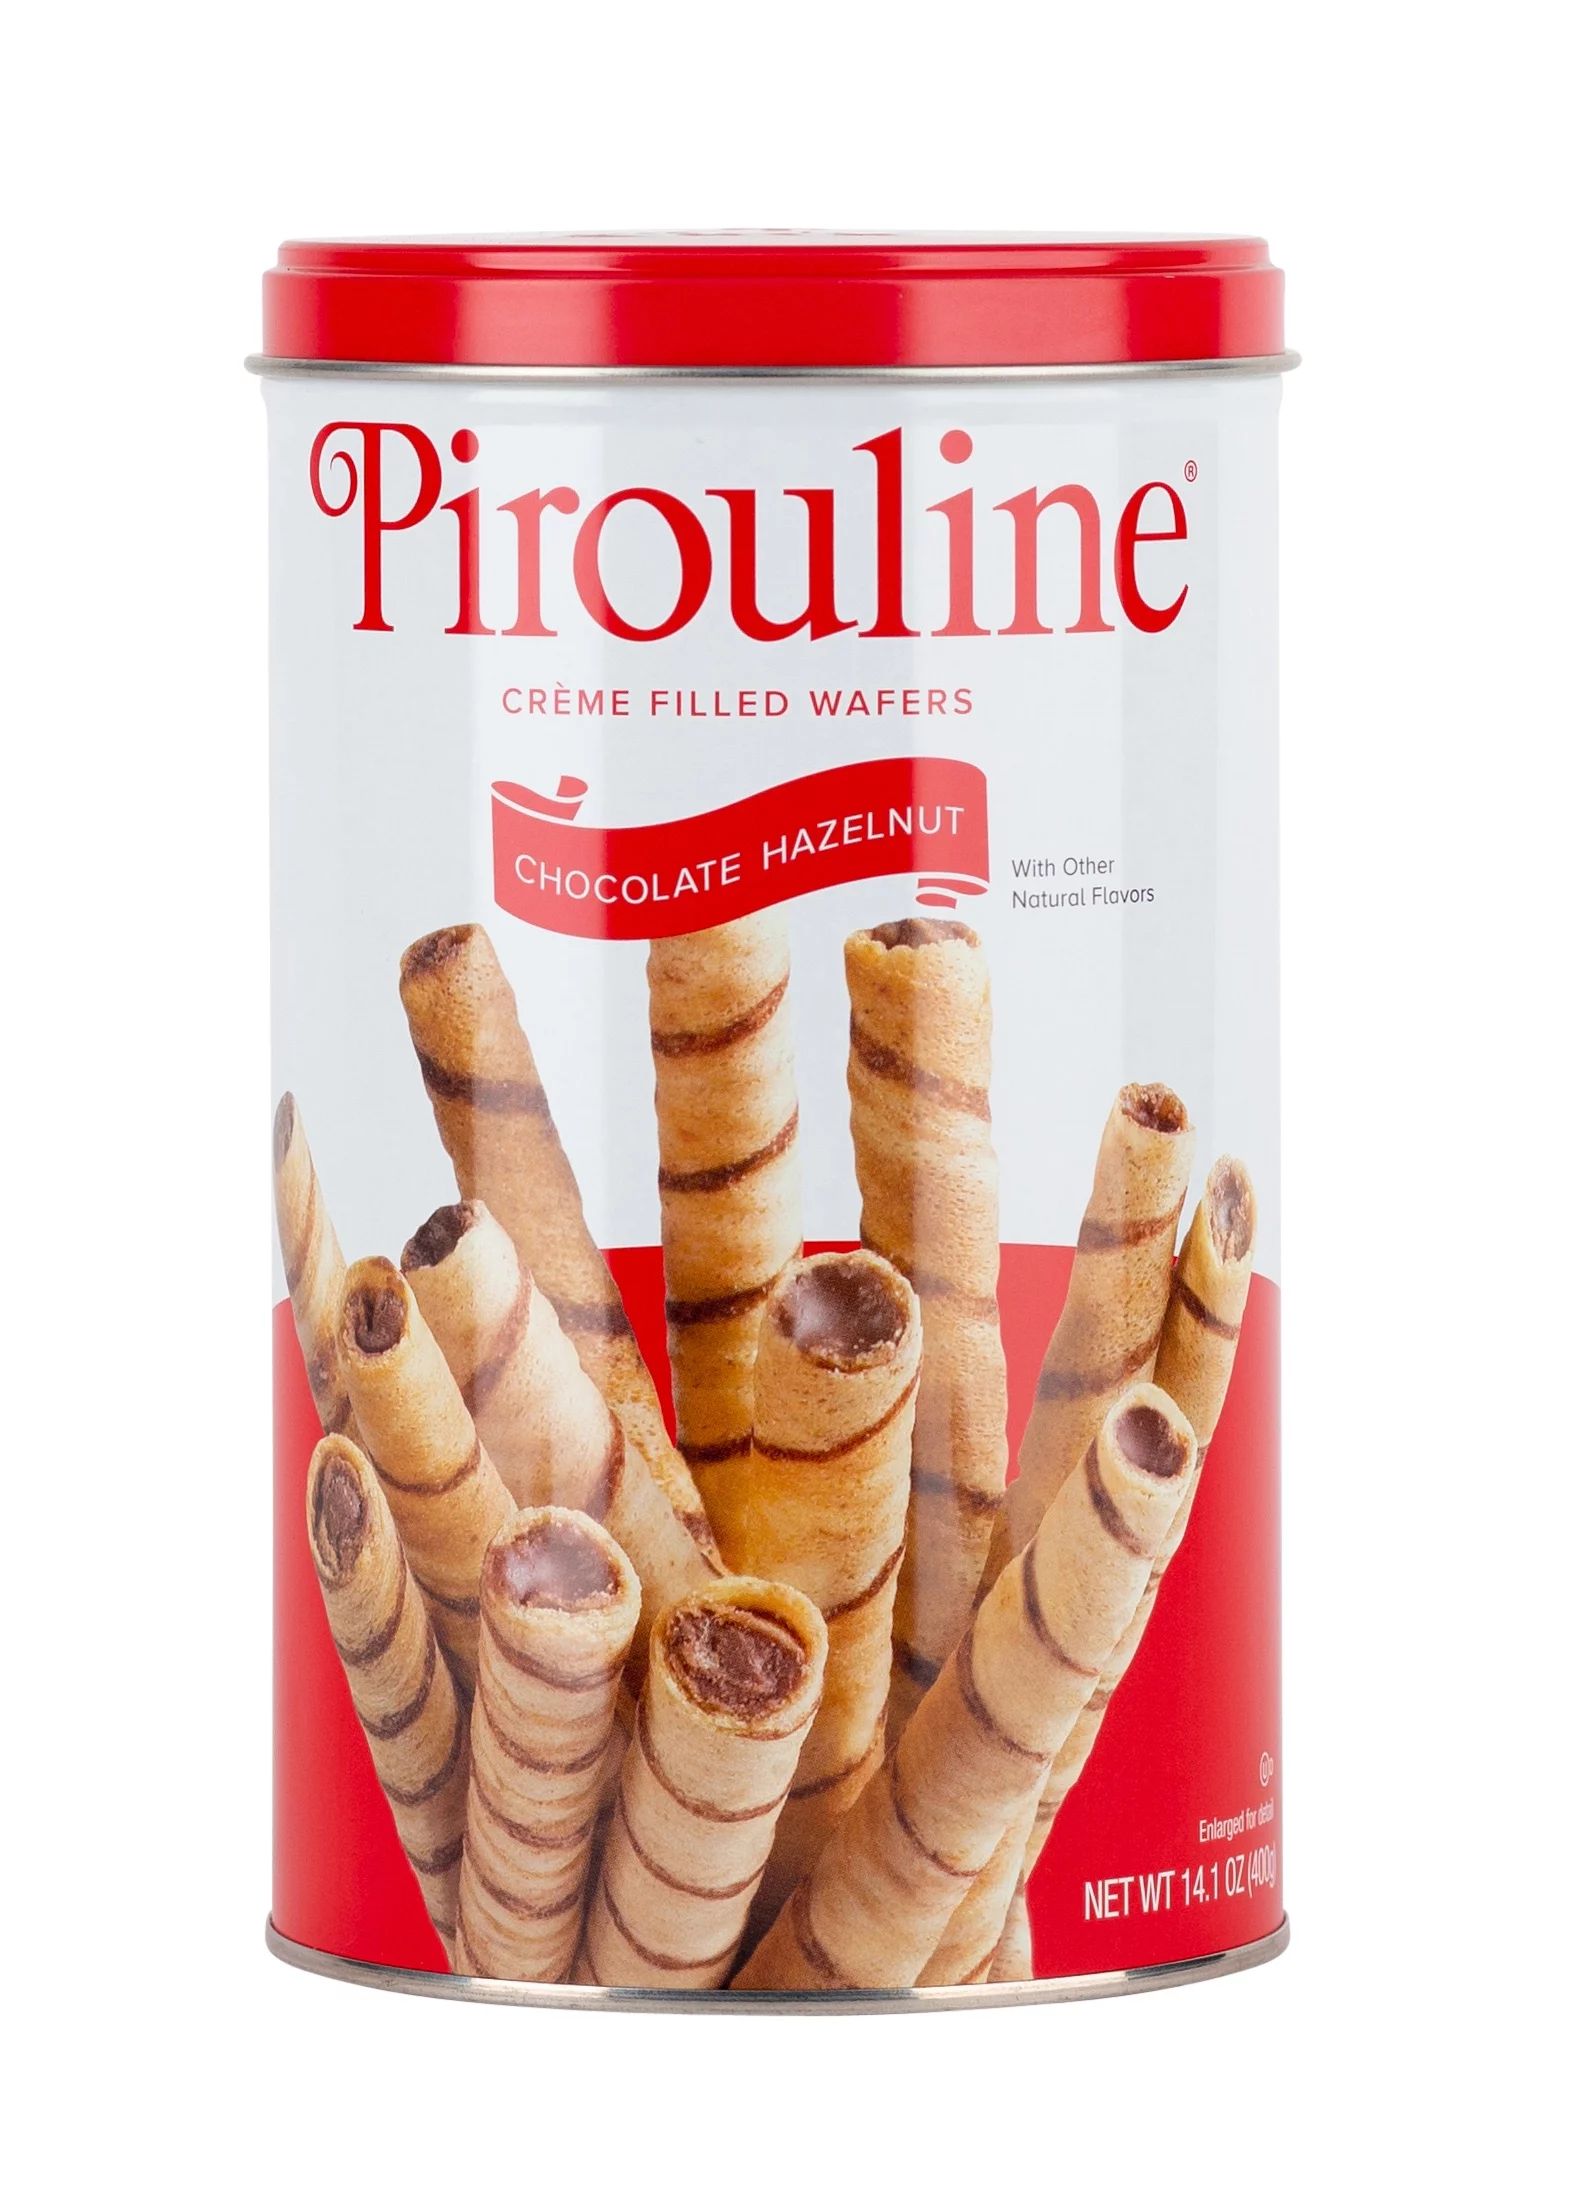 Pirouline Creme Filled Wafers, Chocolate Hazelnut, 14oz - Walmart.com | Walmart (US)